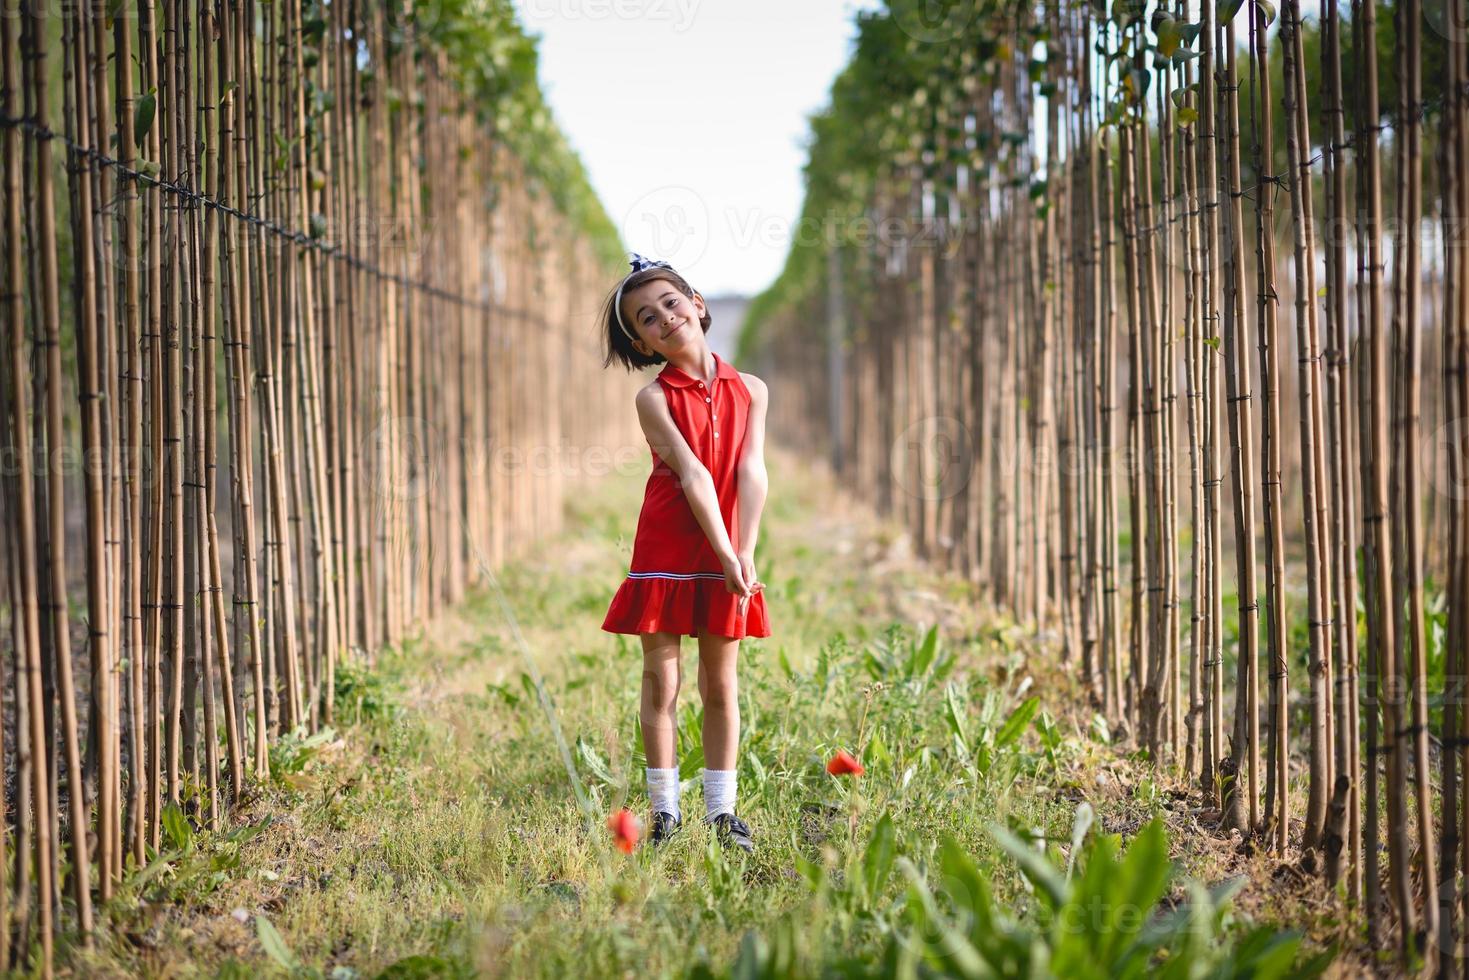 petite fille marchant dans le champ de la nature vêtue d'une belle robe photo